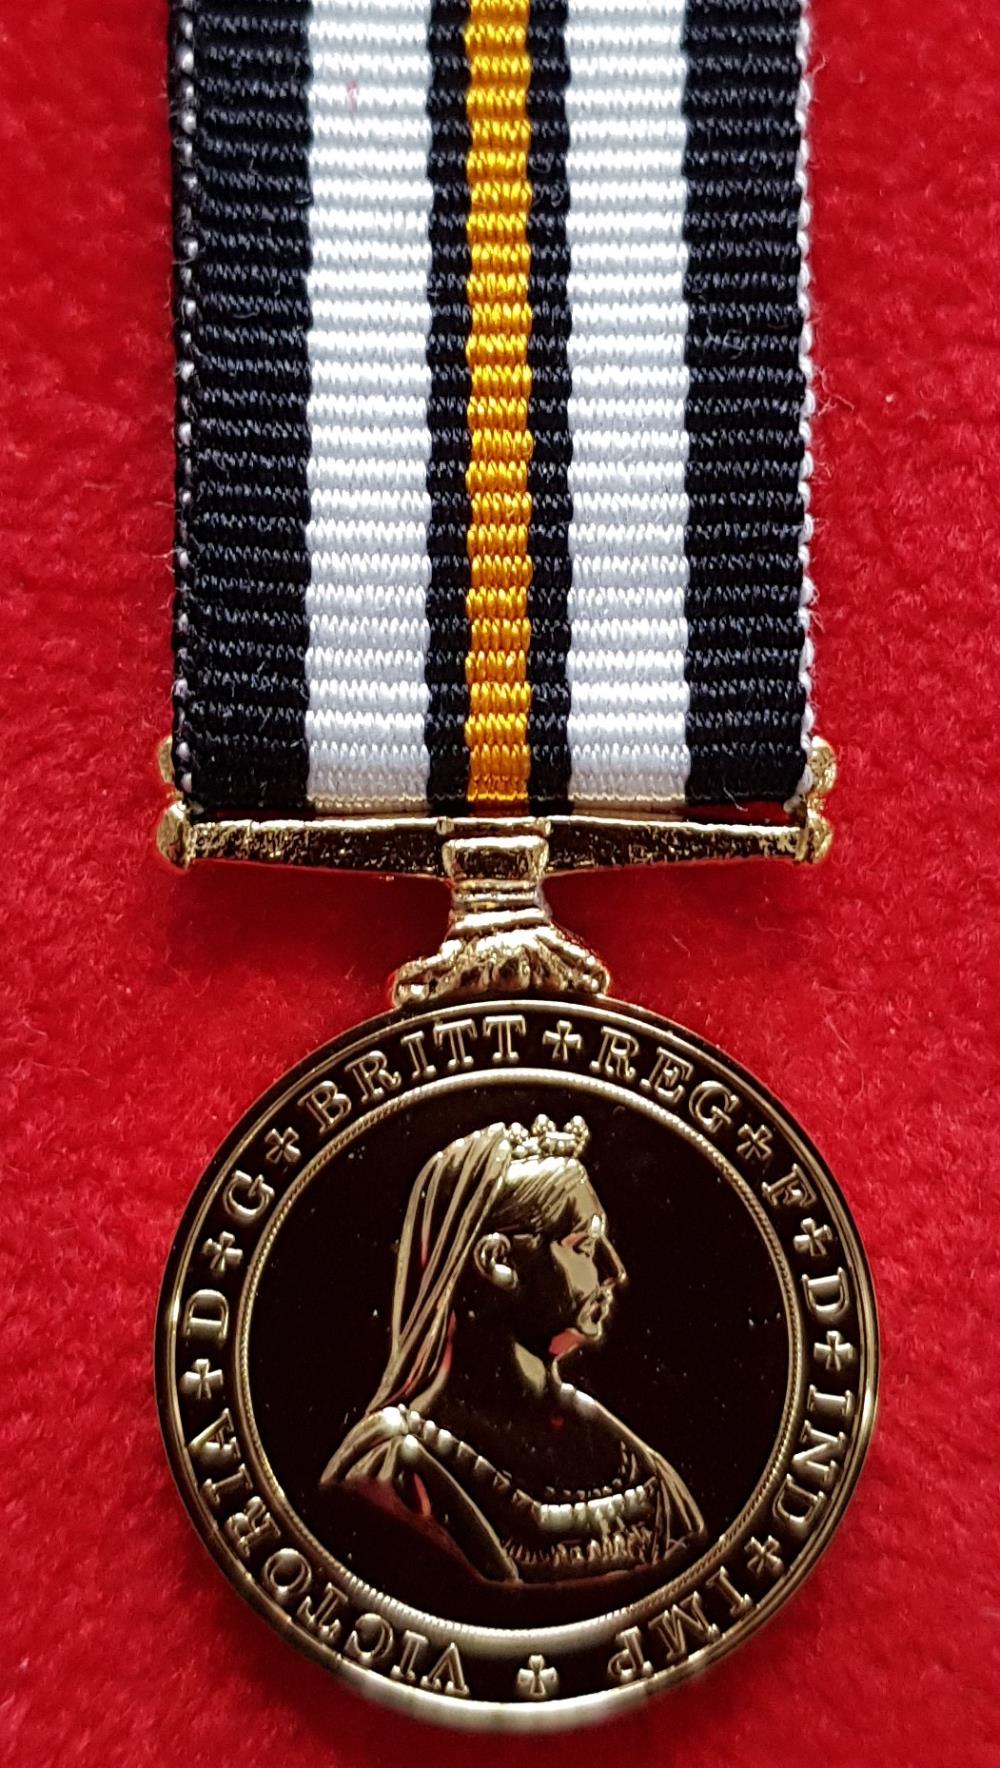 Worcestershire Medal Service: Order of St John - Service Medal Gold